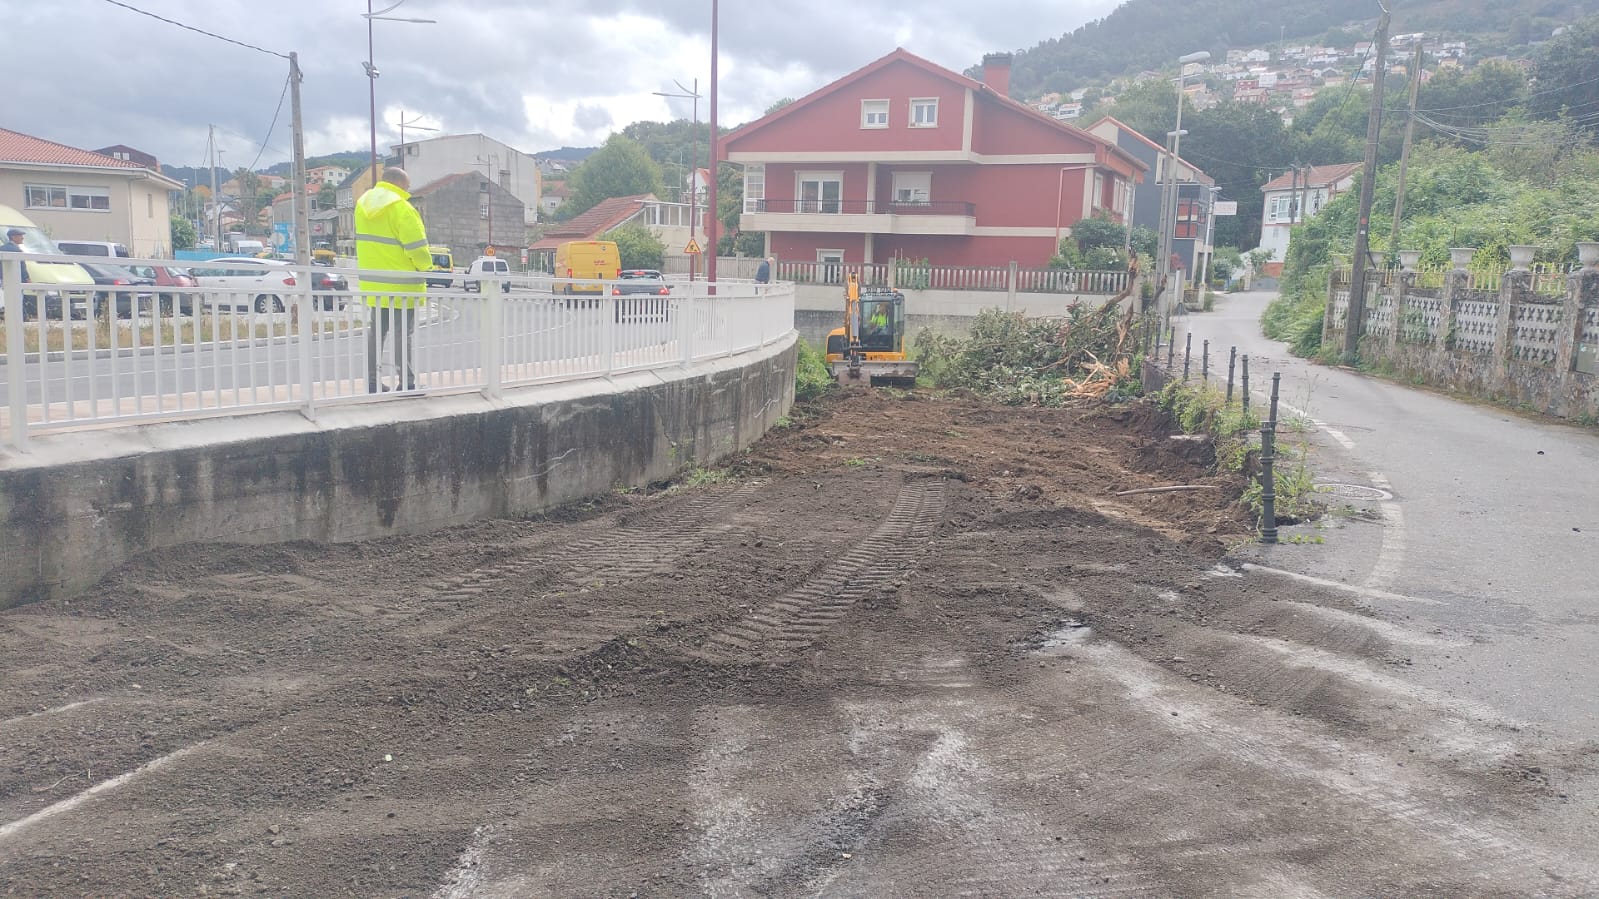 Comezan as obras dun novo aparcadoiro na humanización da Avenida de Galicia, en Teis